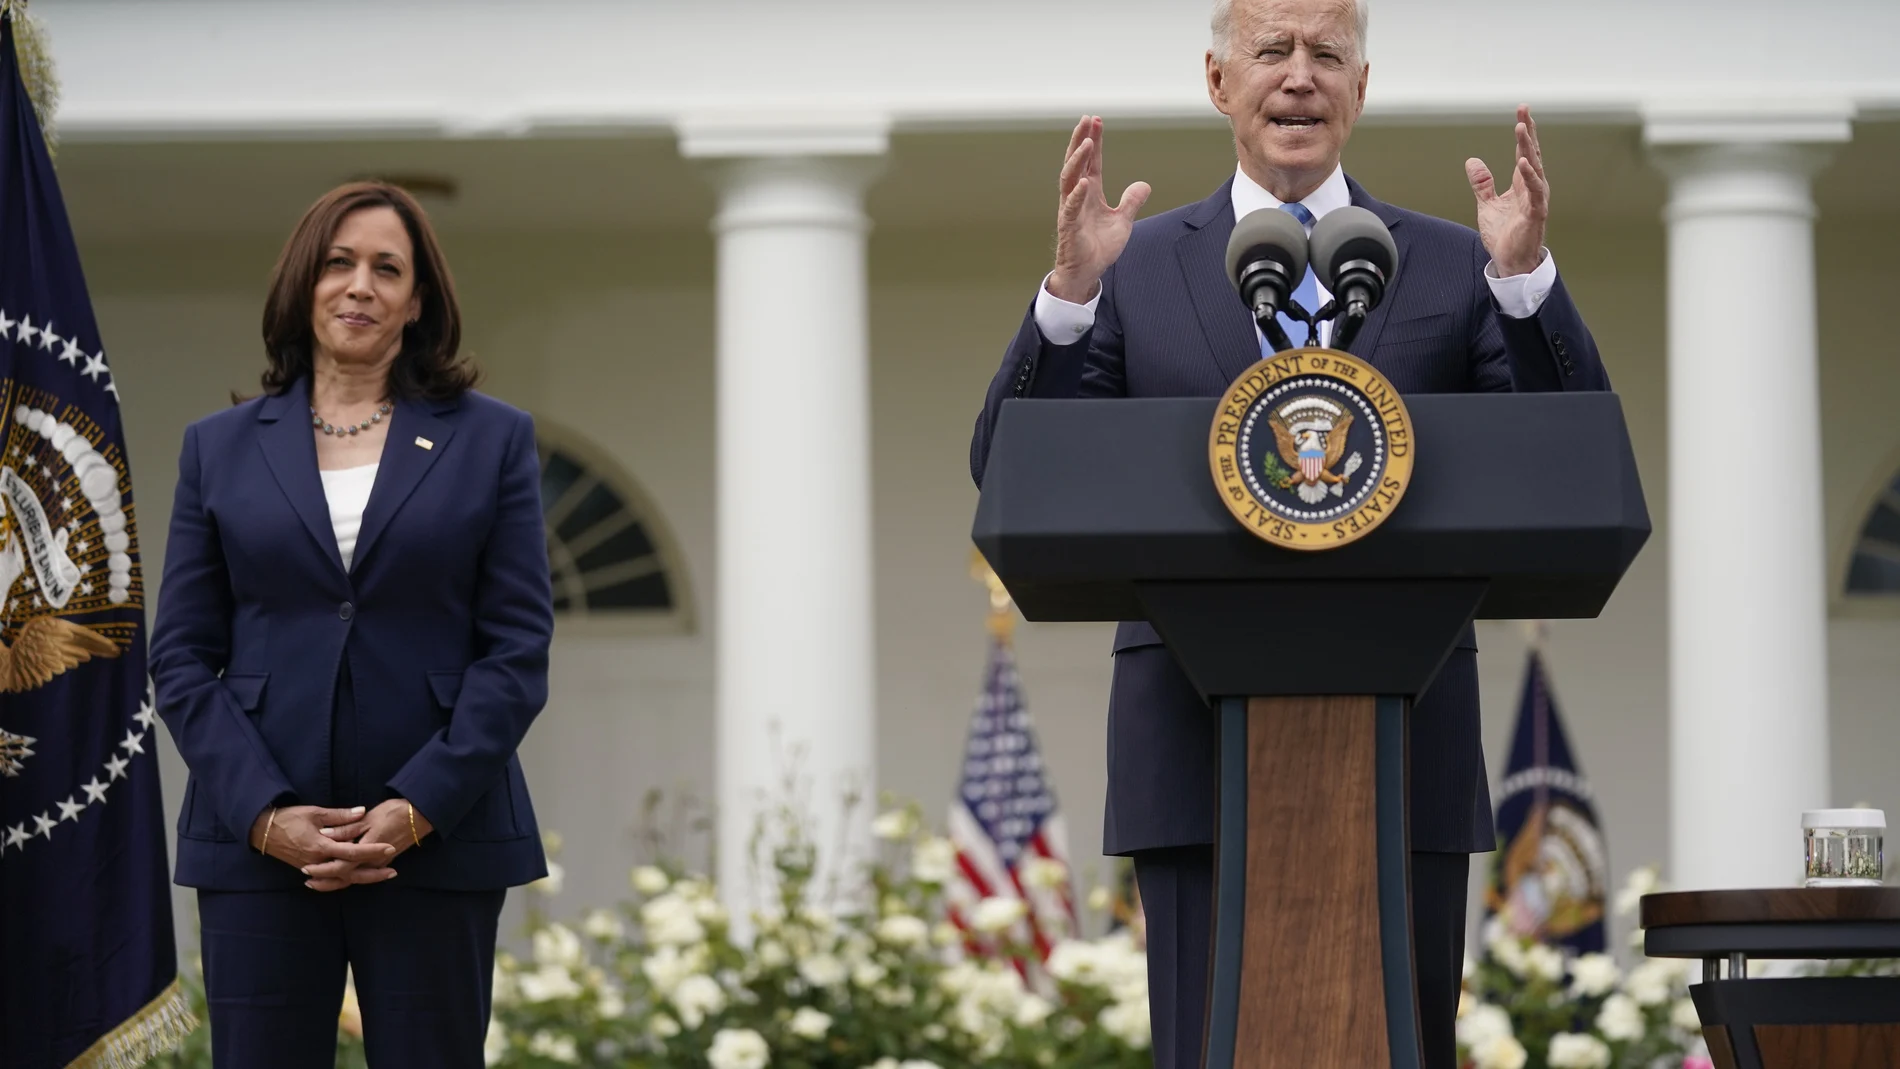 La vicepresidenta, Kamala Harris, escucha al presidente Joe Biden en la rosaleda de la Casa Blanca